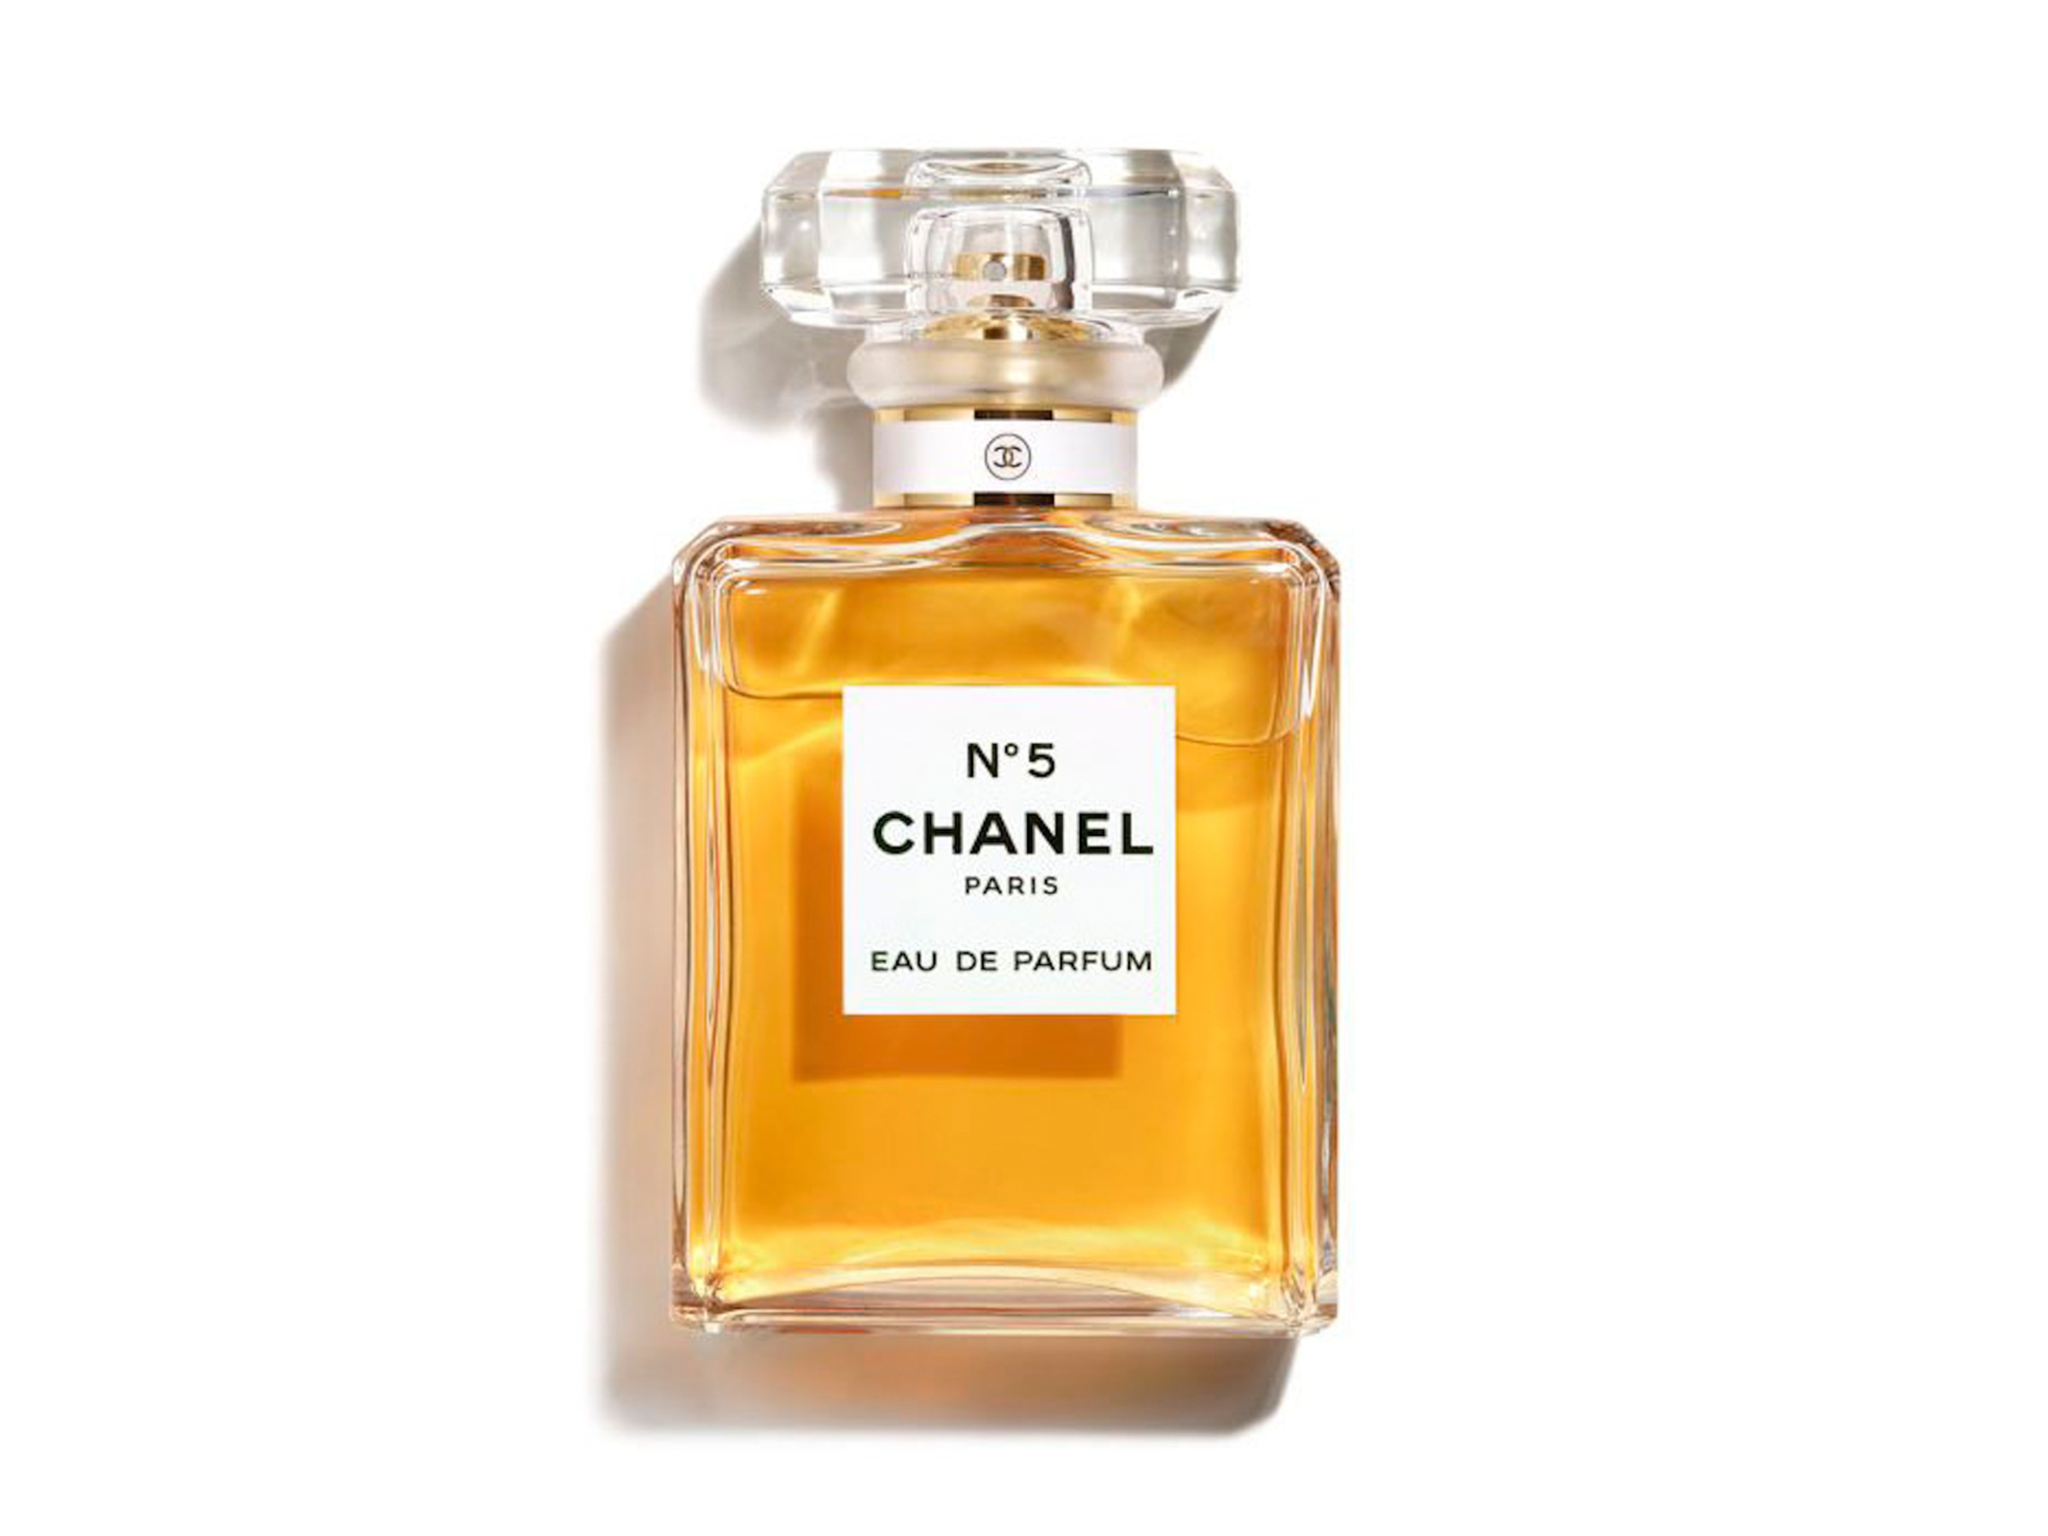 Chanel No5 eau de parfum-indybest